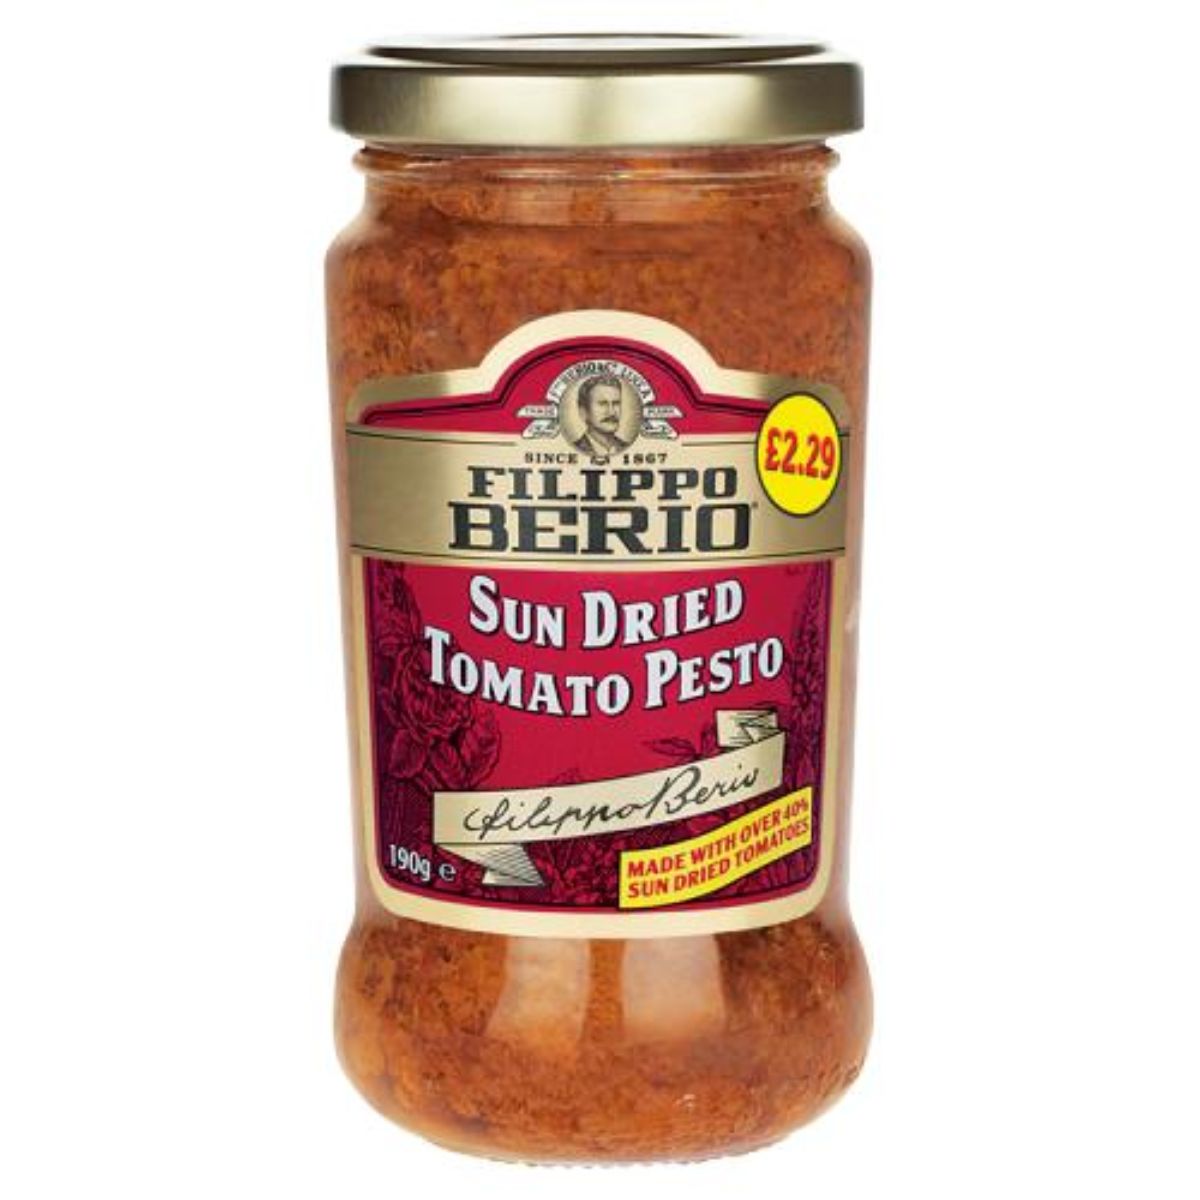 A jar of Filippo Berio - Sun Dried Tomato Pesto - 190g.